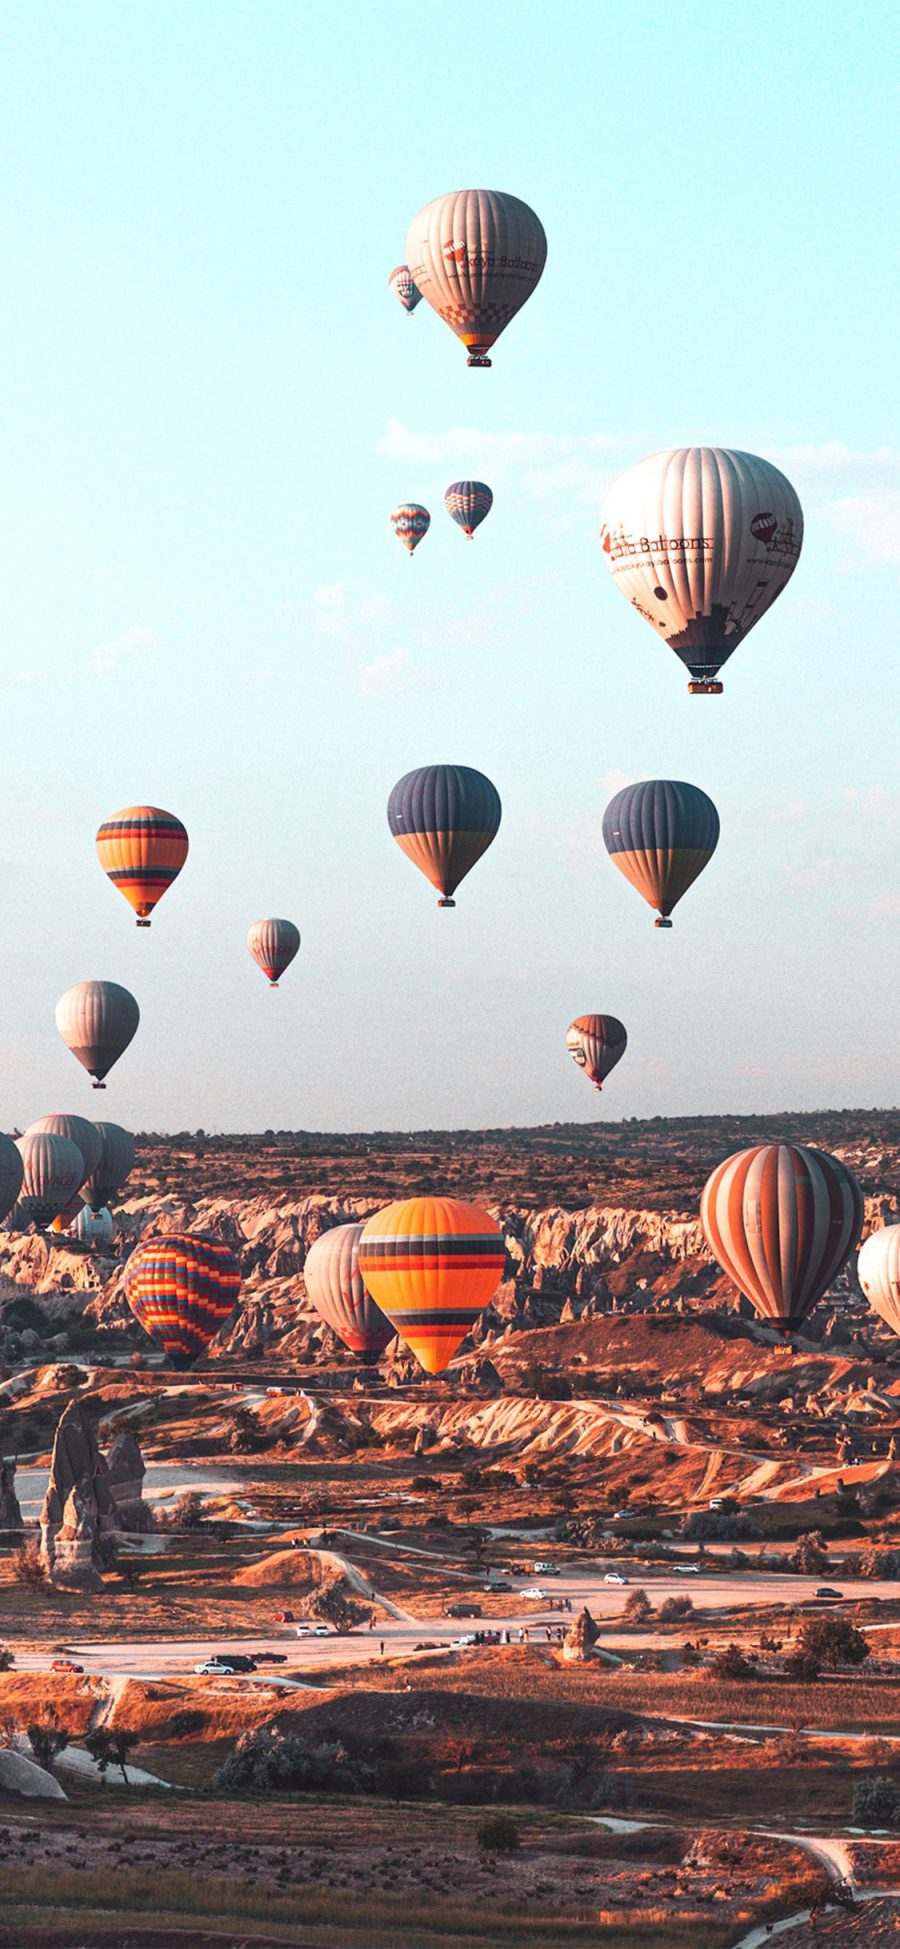 [2436×1125]热气球 土耳其 景点 旅游 苹果手机壁纸图片